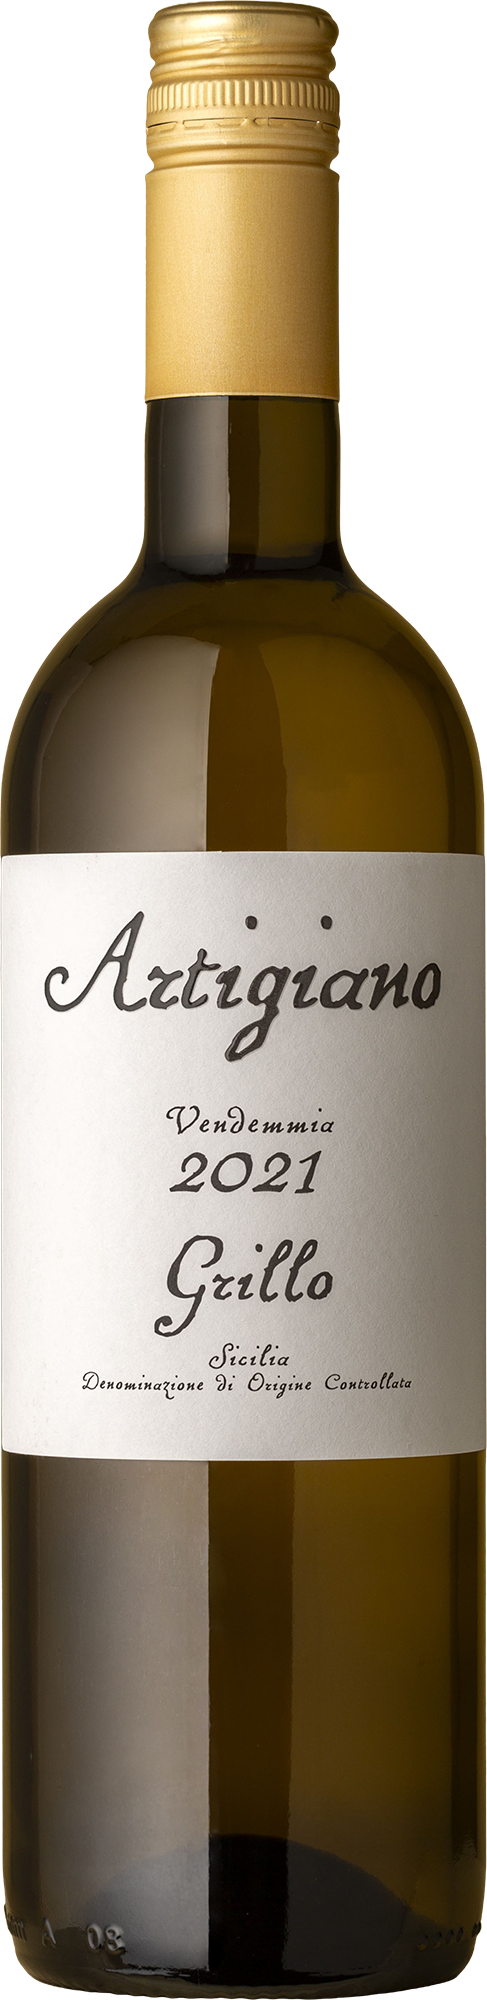 Artigiano - Grillo 2021 White Wine